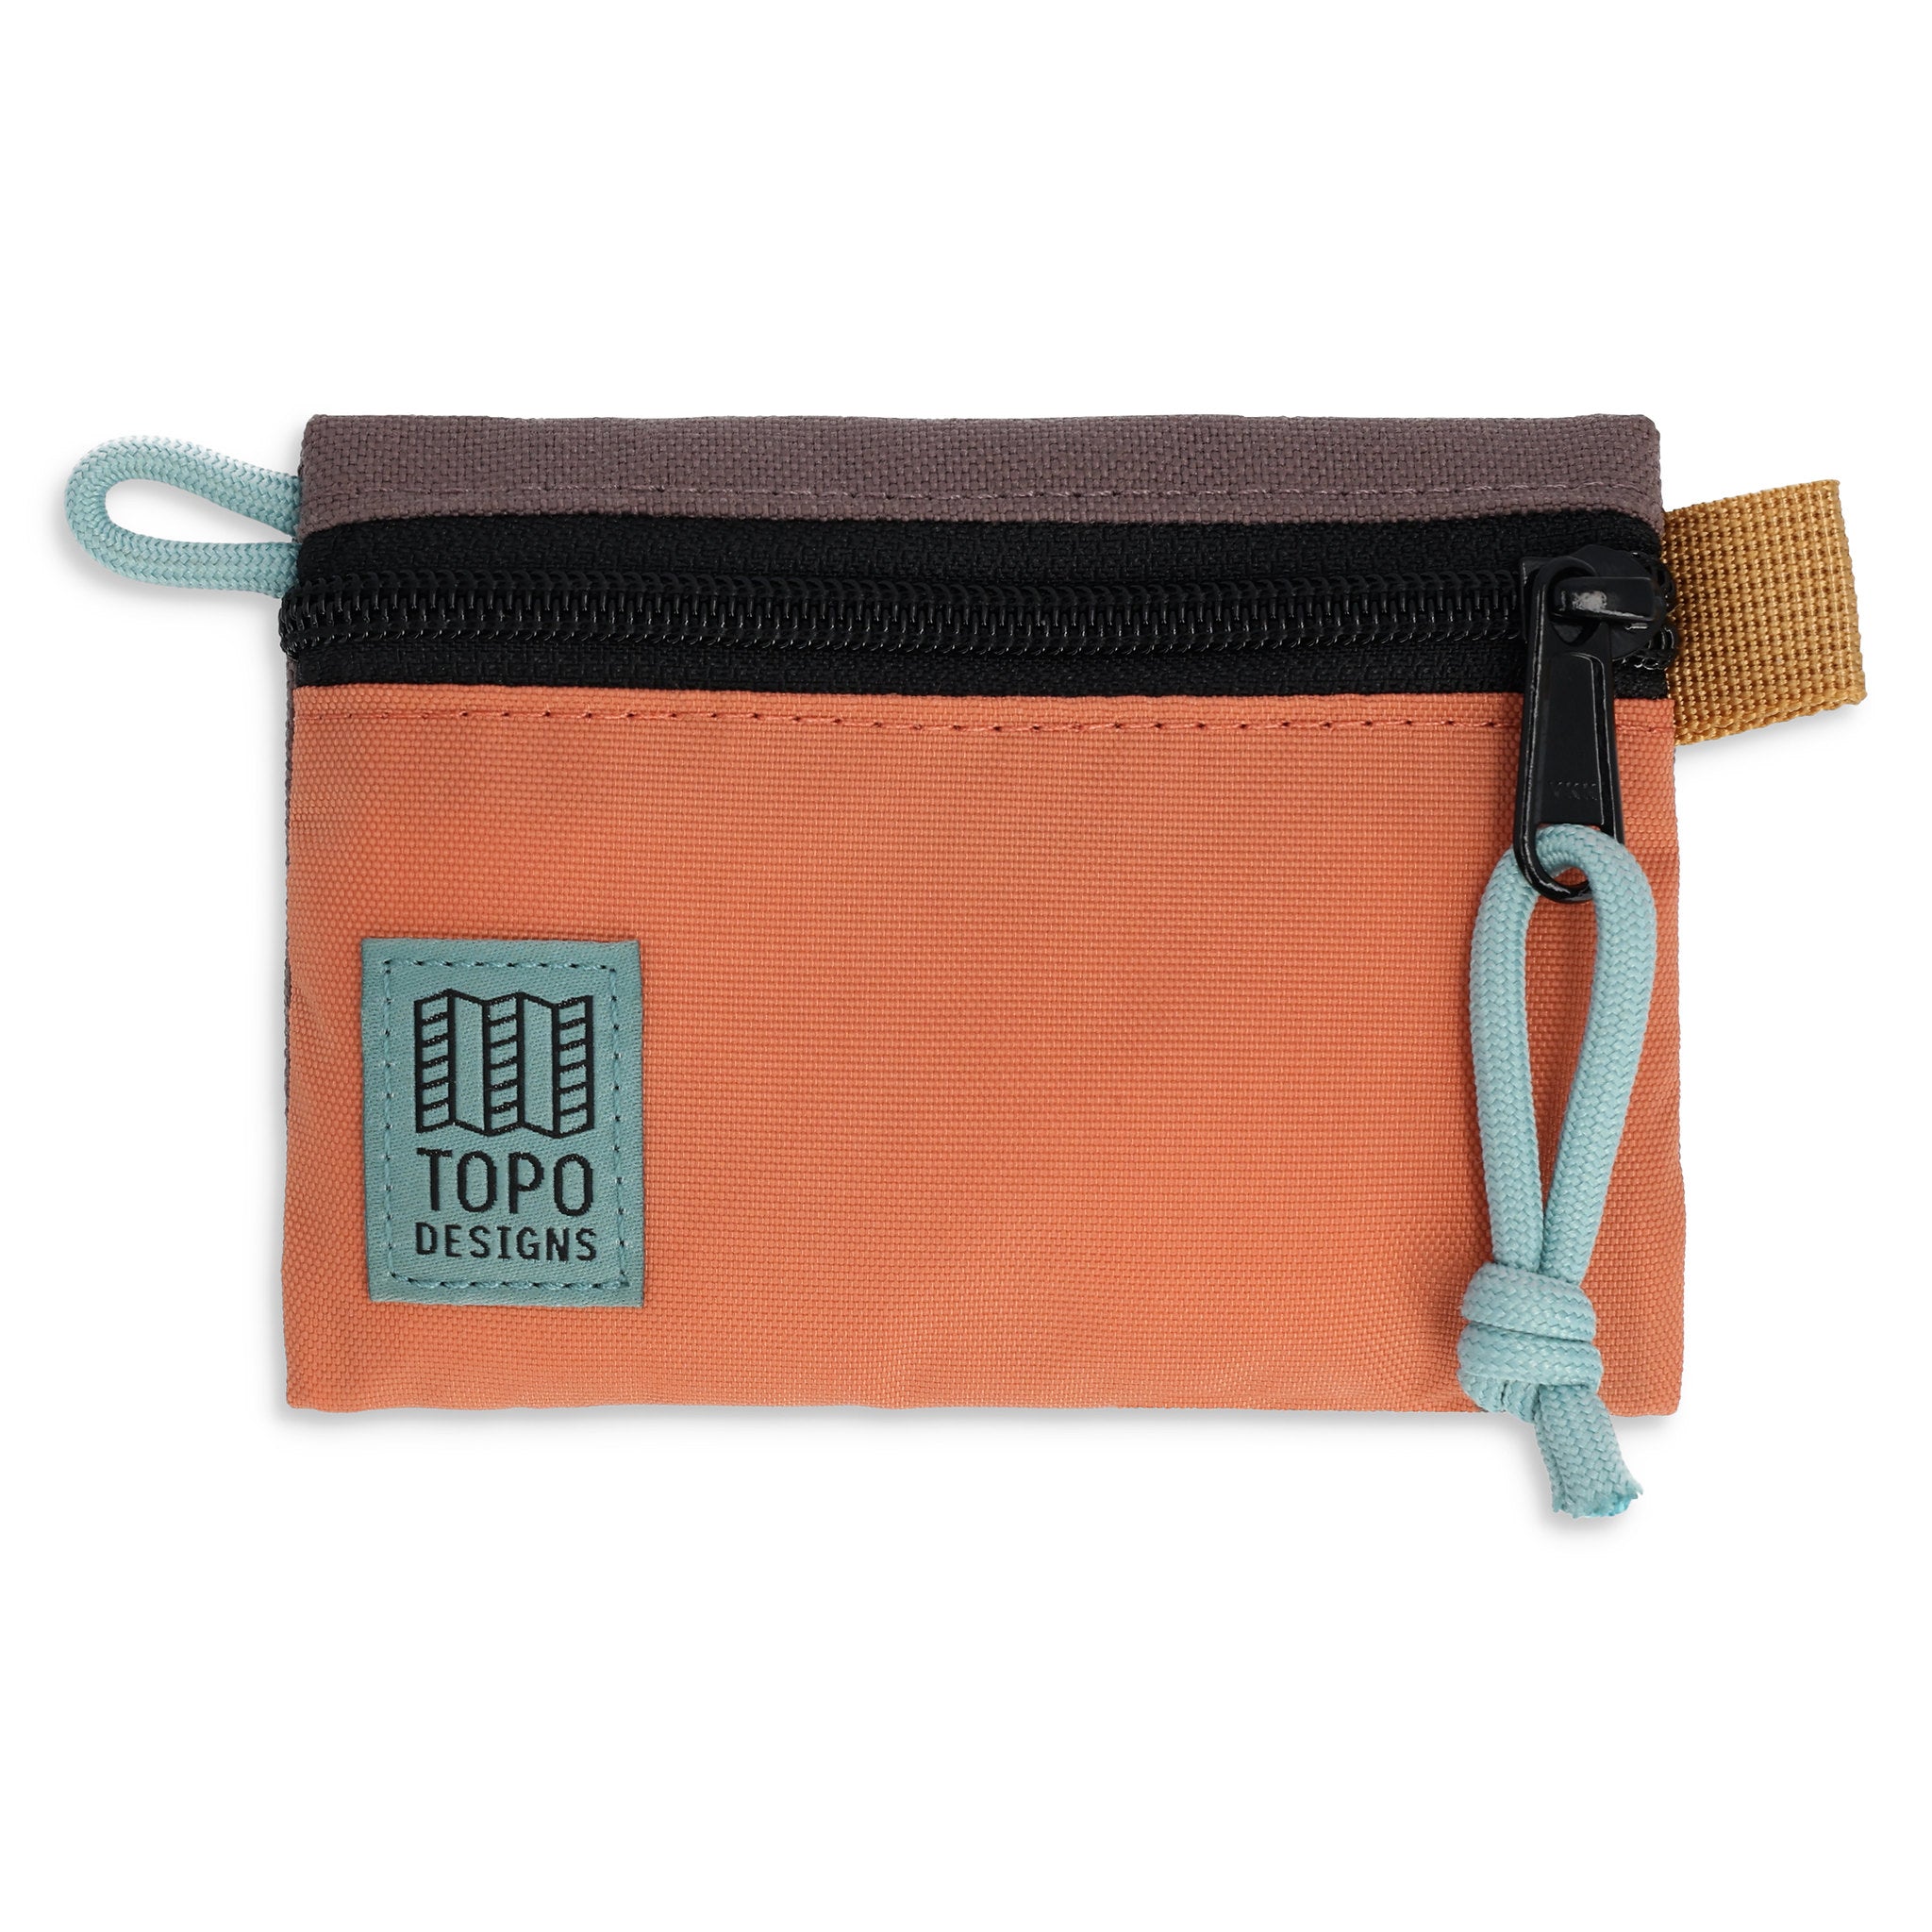 Accessory Bag Micro Topo Designs